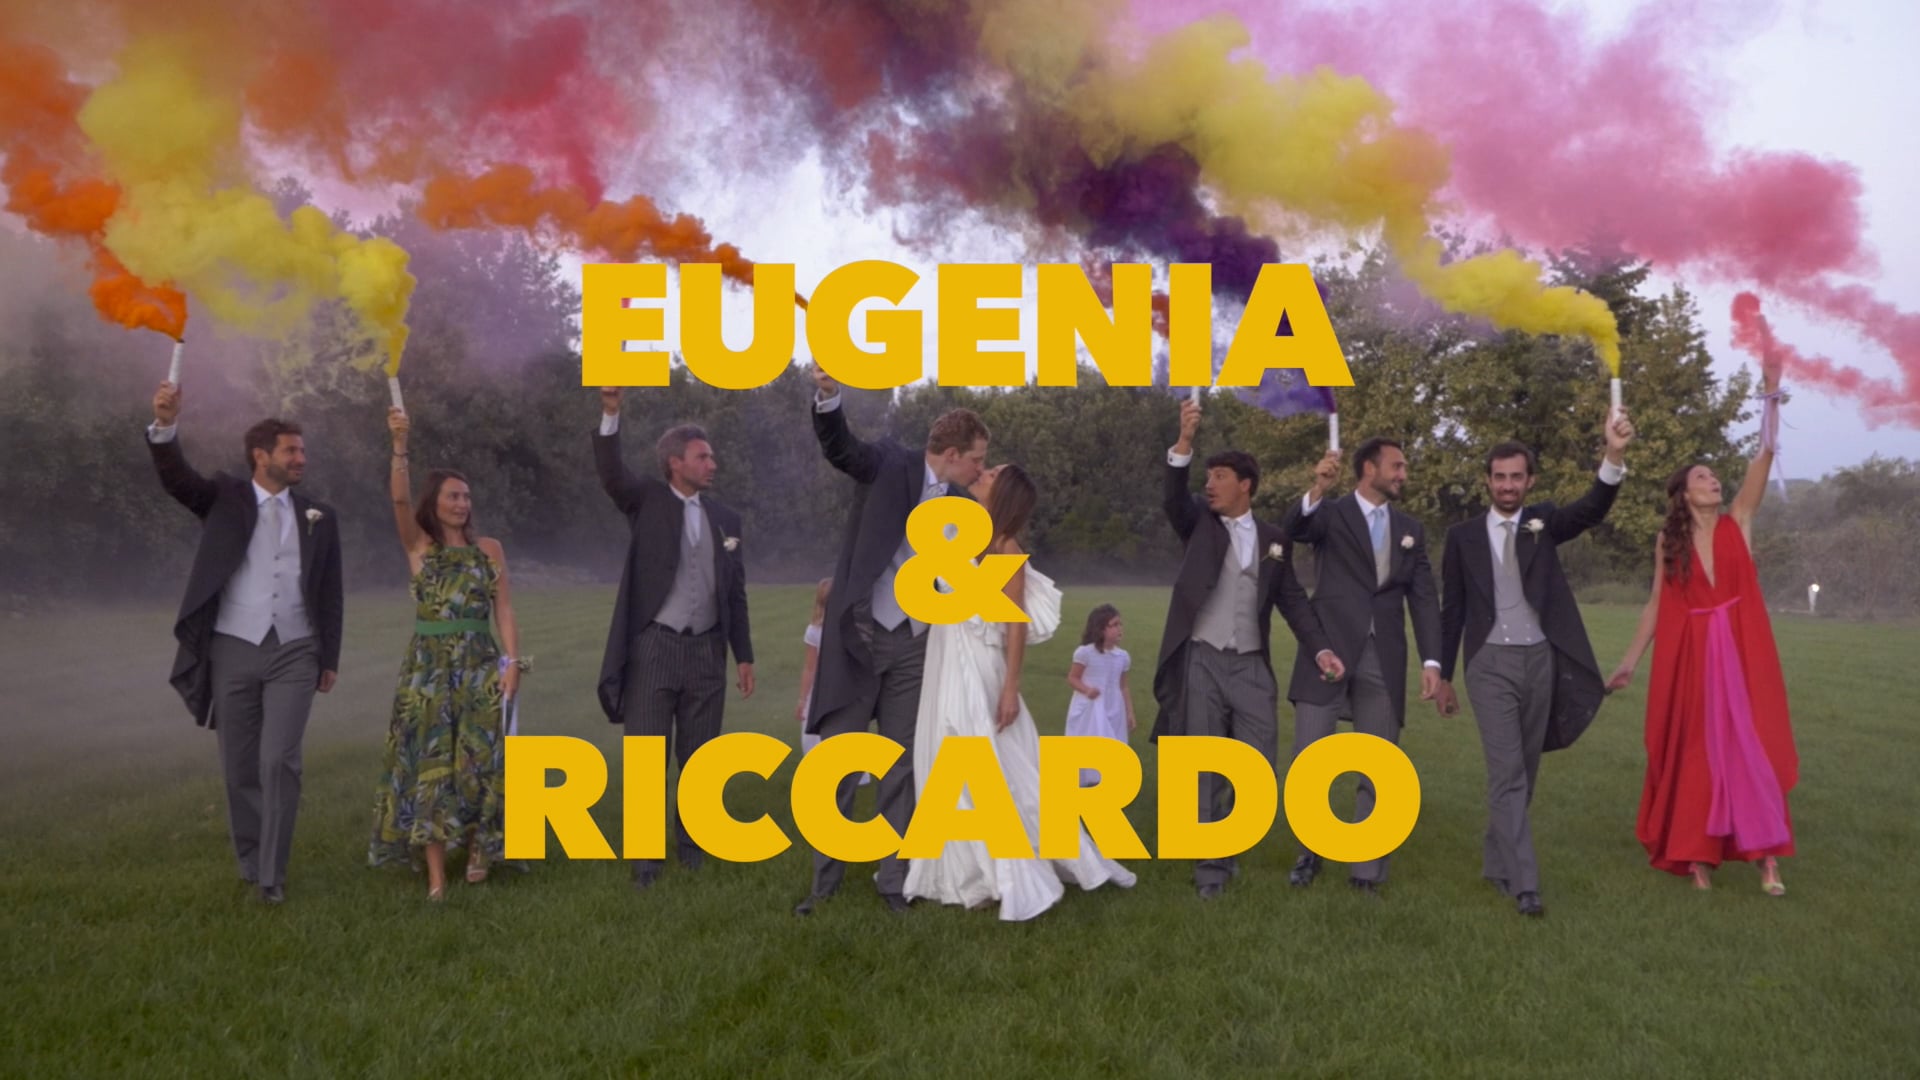 EUGENIA & RICCARDO